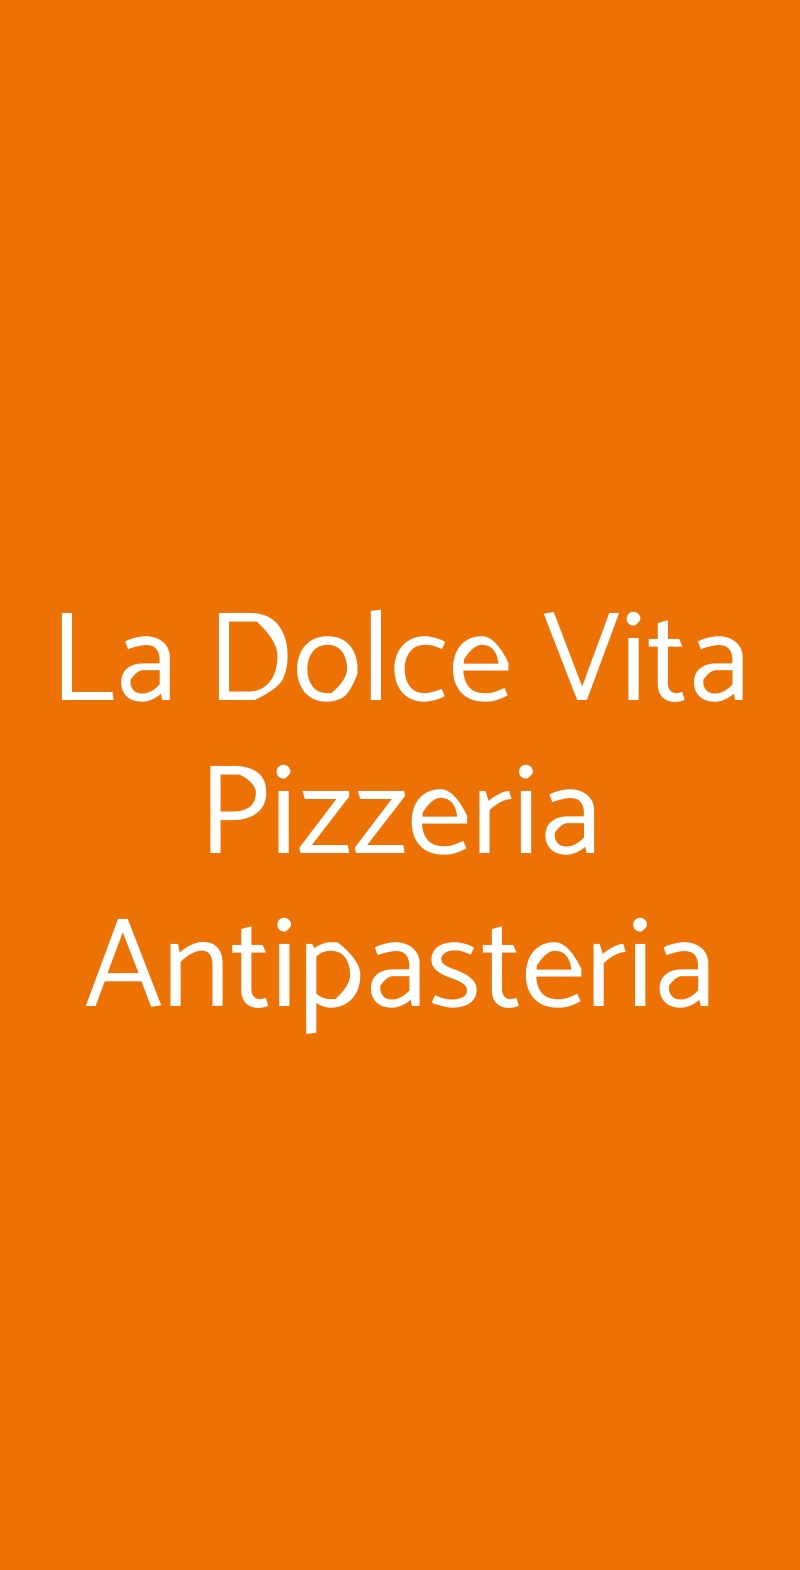 La Dolce Vita Pizzeria Antipasteria Bari menù 1 pagina